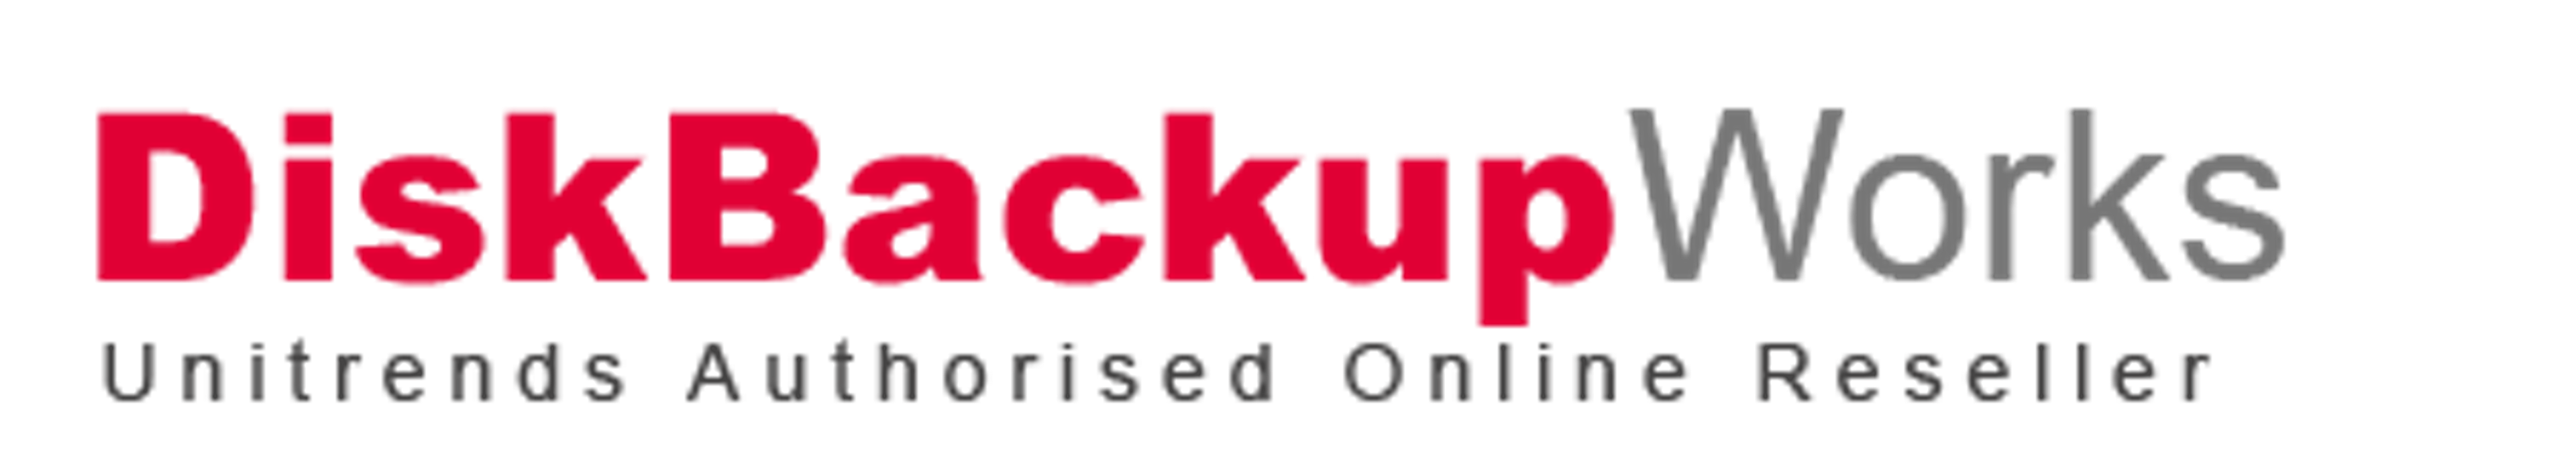 DiskBackupWorks com au